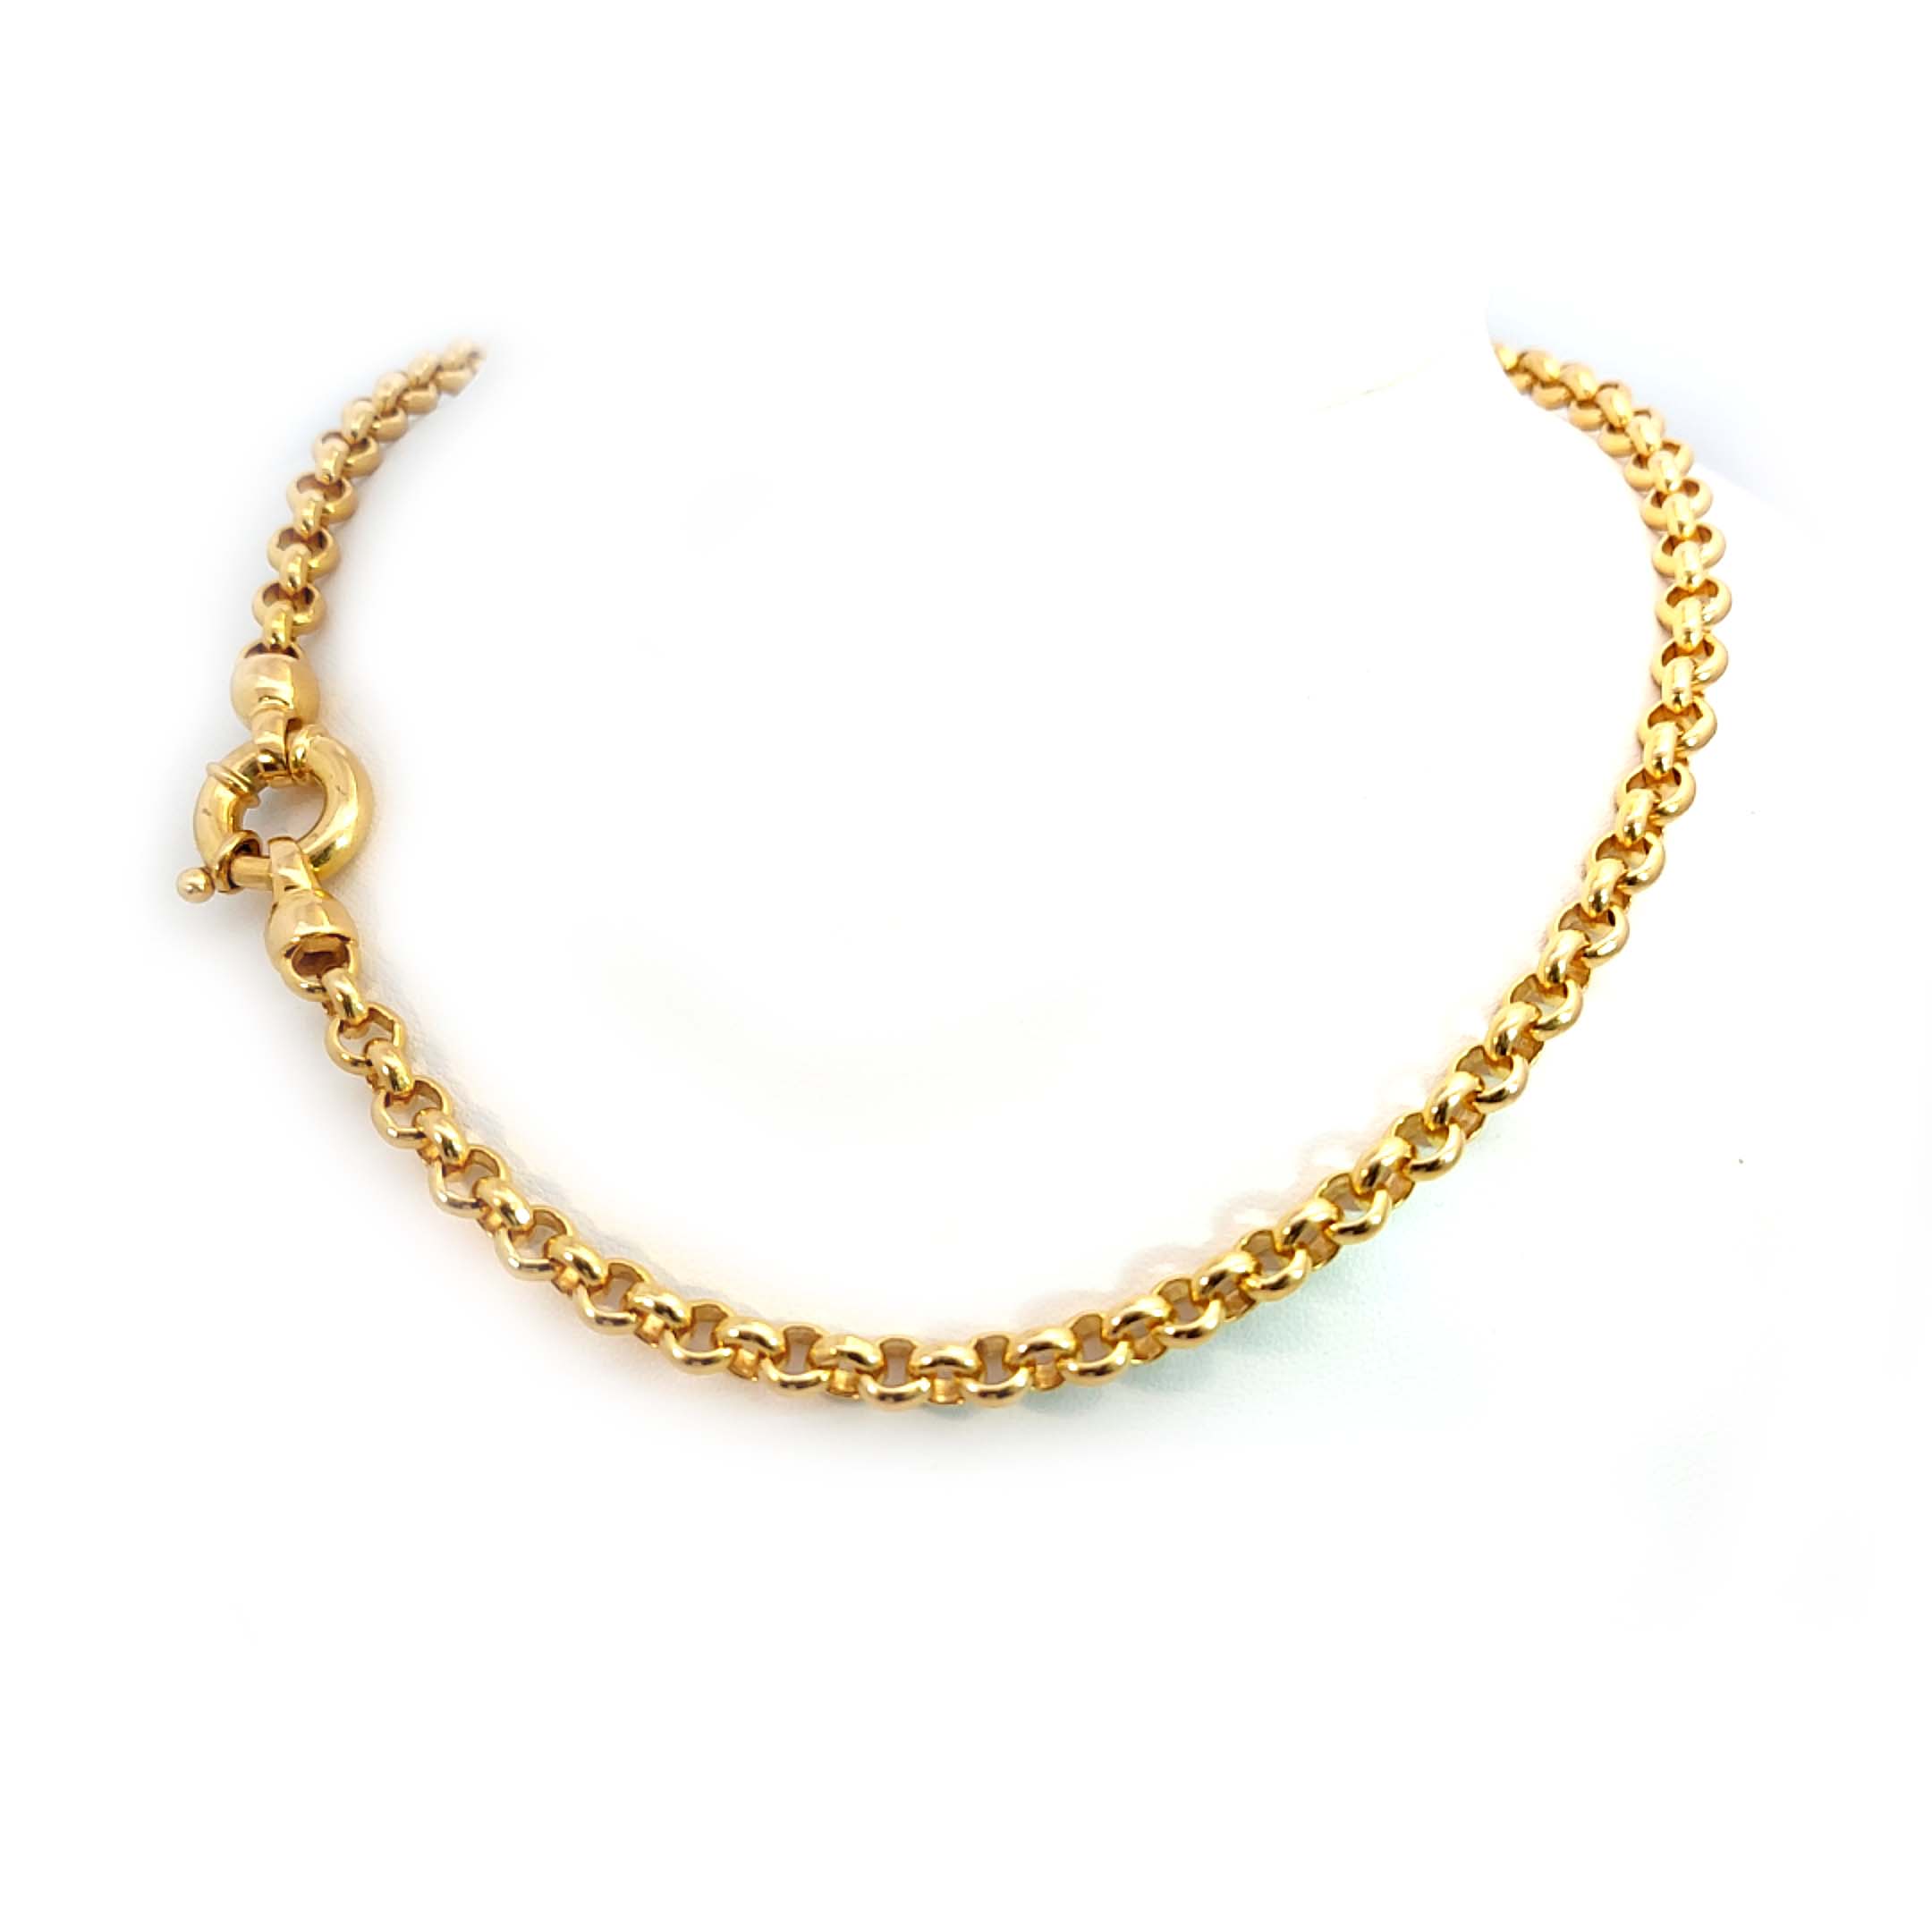 Diamant-Perlen-Anhänger in 18 kt Gelbgold mit 14,35mm Perle und 0,20ct Diamanten